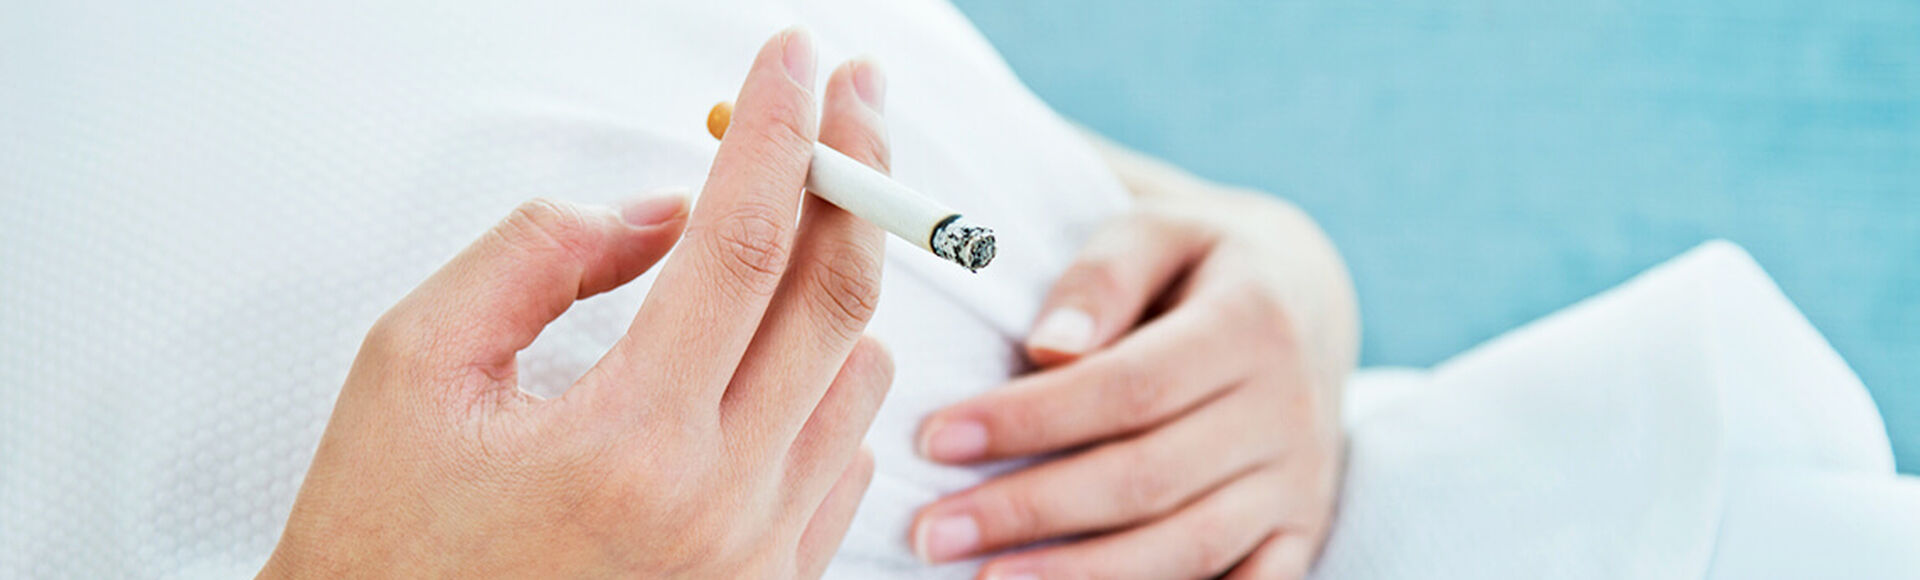 Efectos del cigarrillo en tu embarazo | Más Abrazos by Huggies